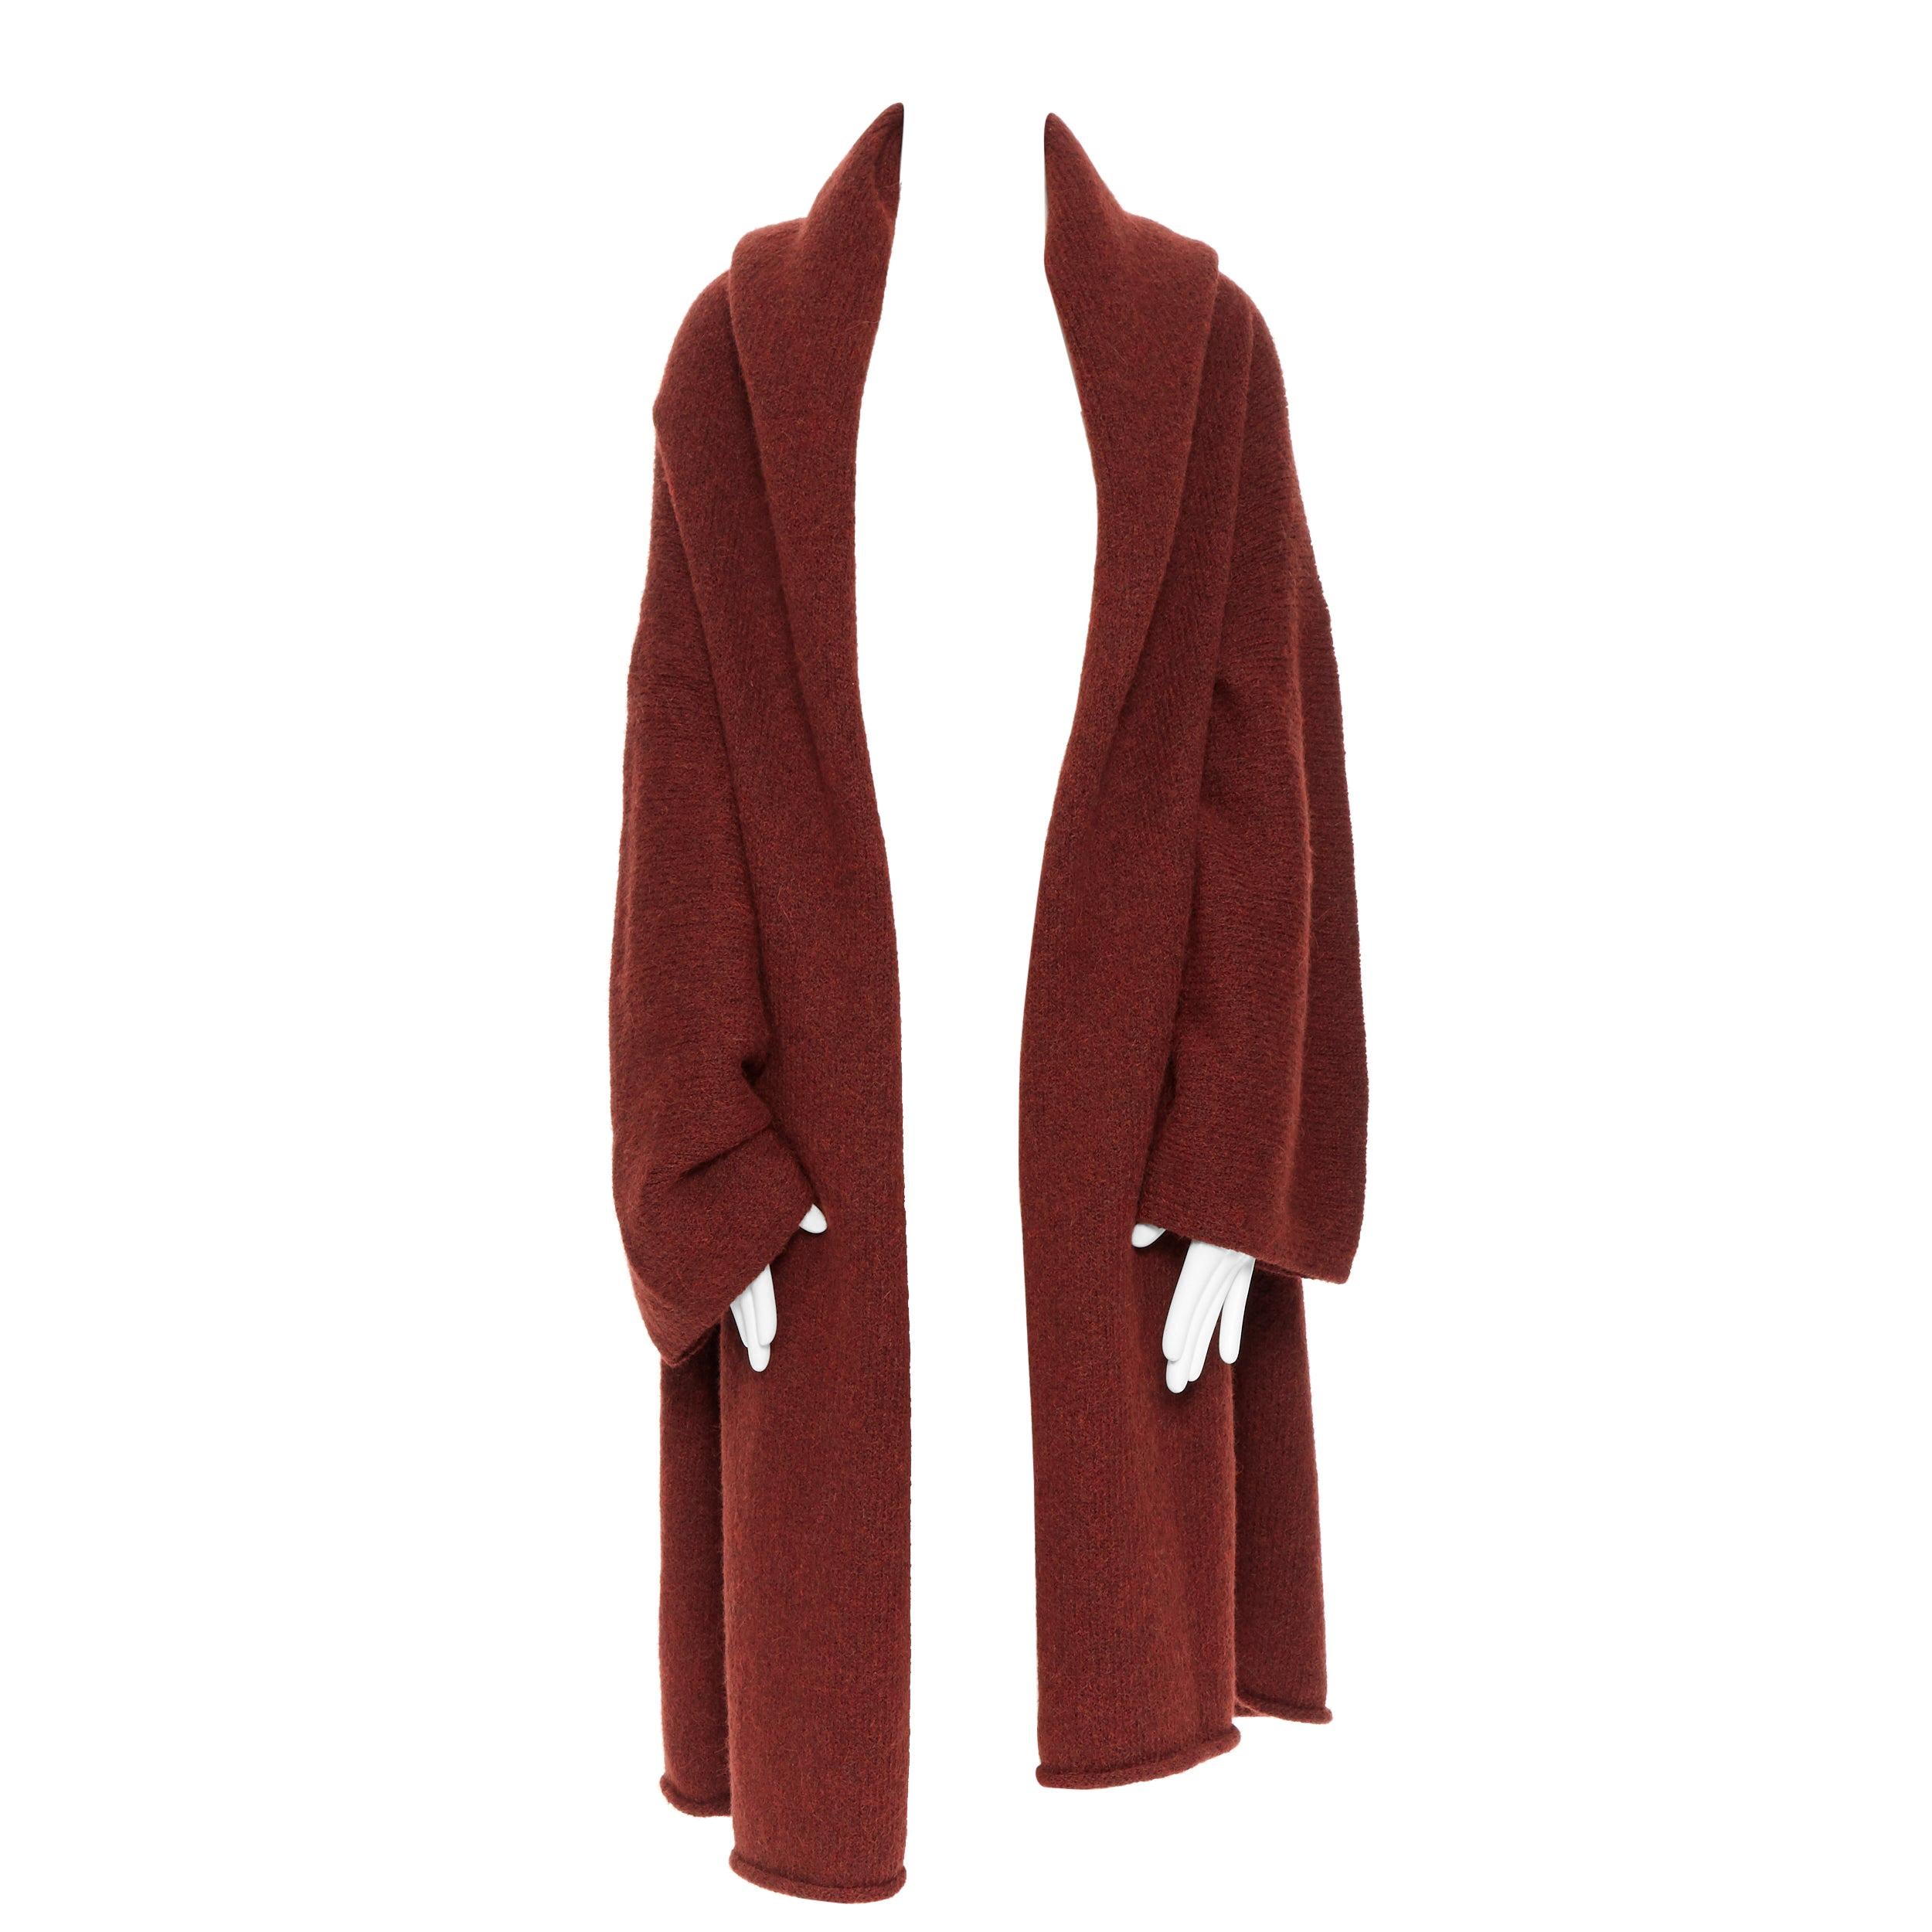 LAUREN MANOOGIAN maroon brown hand loomed alpaca wool oversized coat cardigan